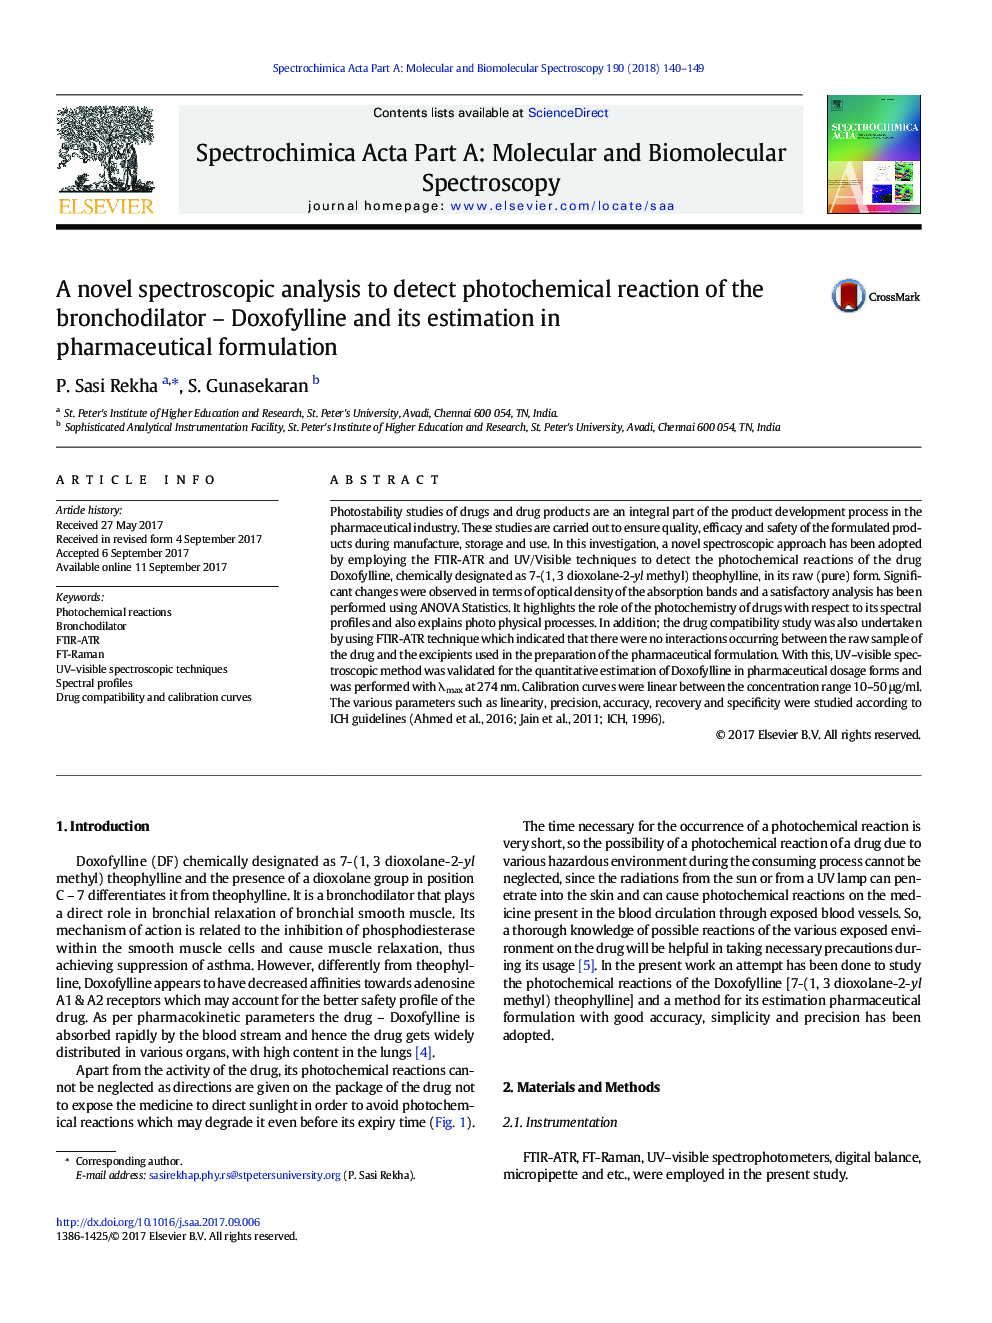 تجزیه و تحلیل جدید طیف سنجی برای تشخیص واکنش های فتوشیمیایی برونکودیلاتور - دوکسوفیلین و برآورد آن در فرمولاسیون دارویی